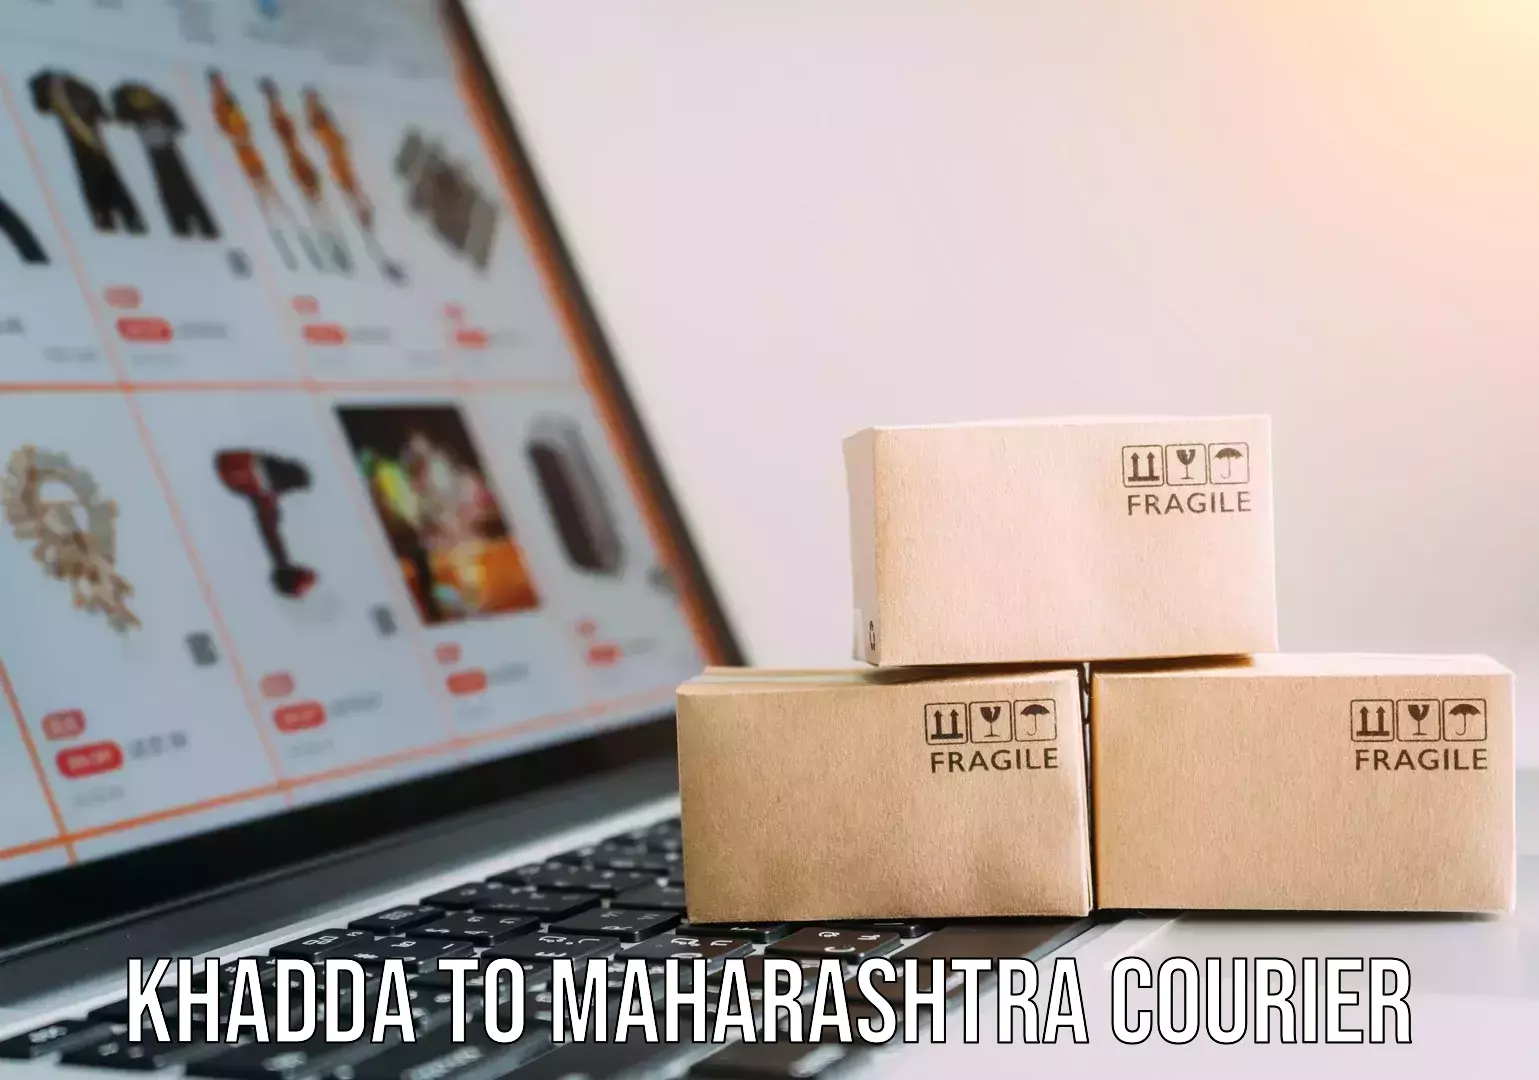 Trusted moving company Khadda to Maharashtra